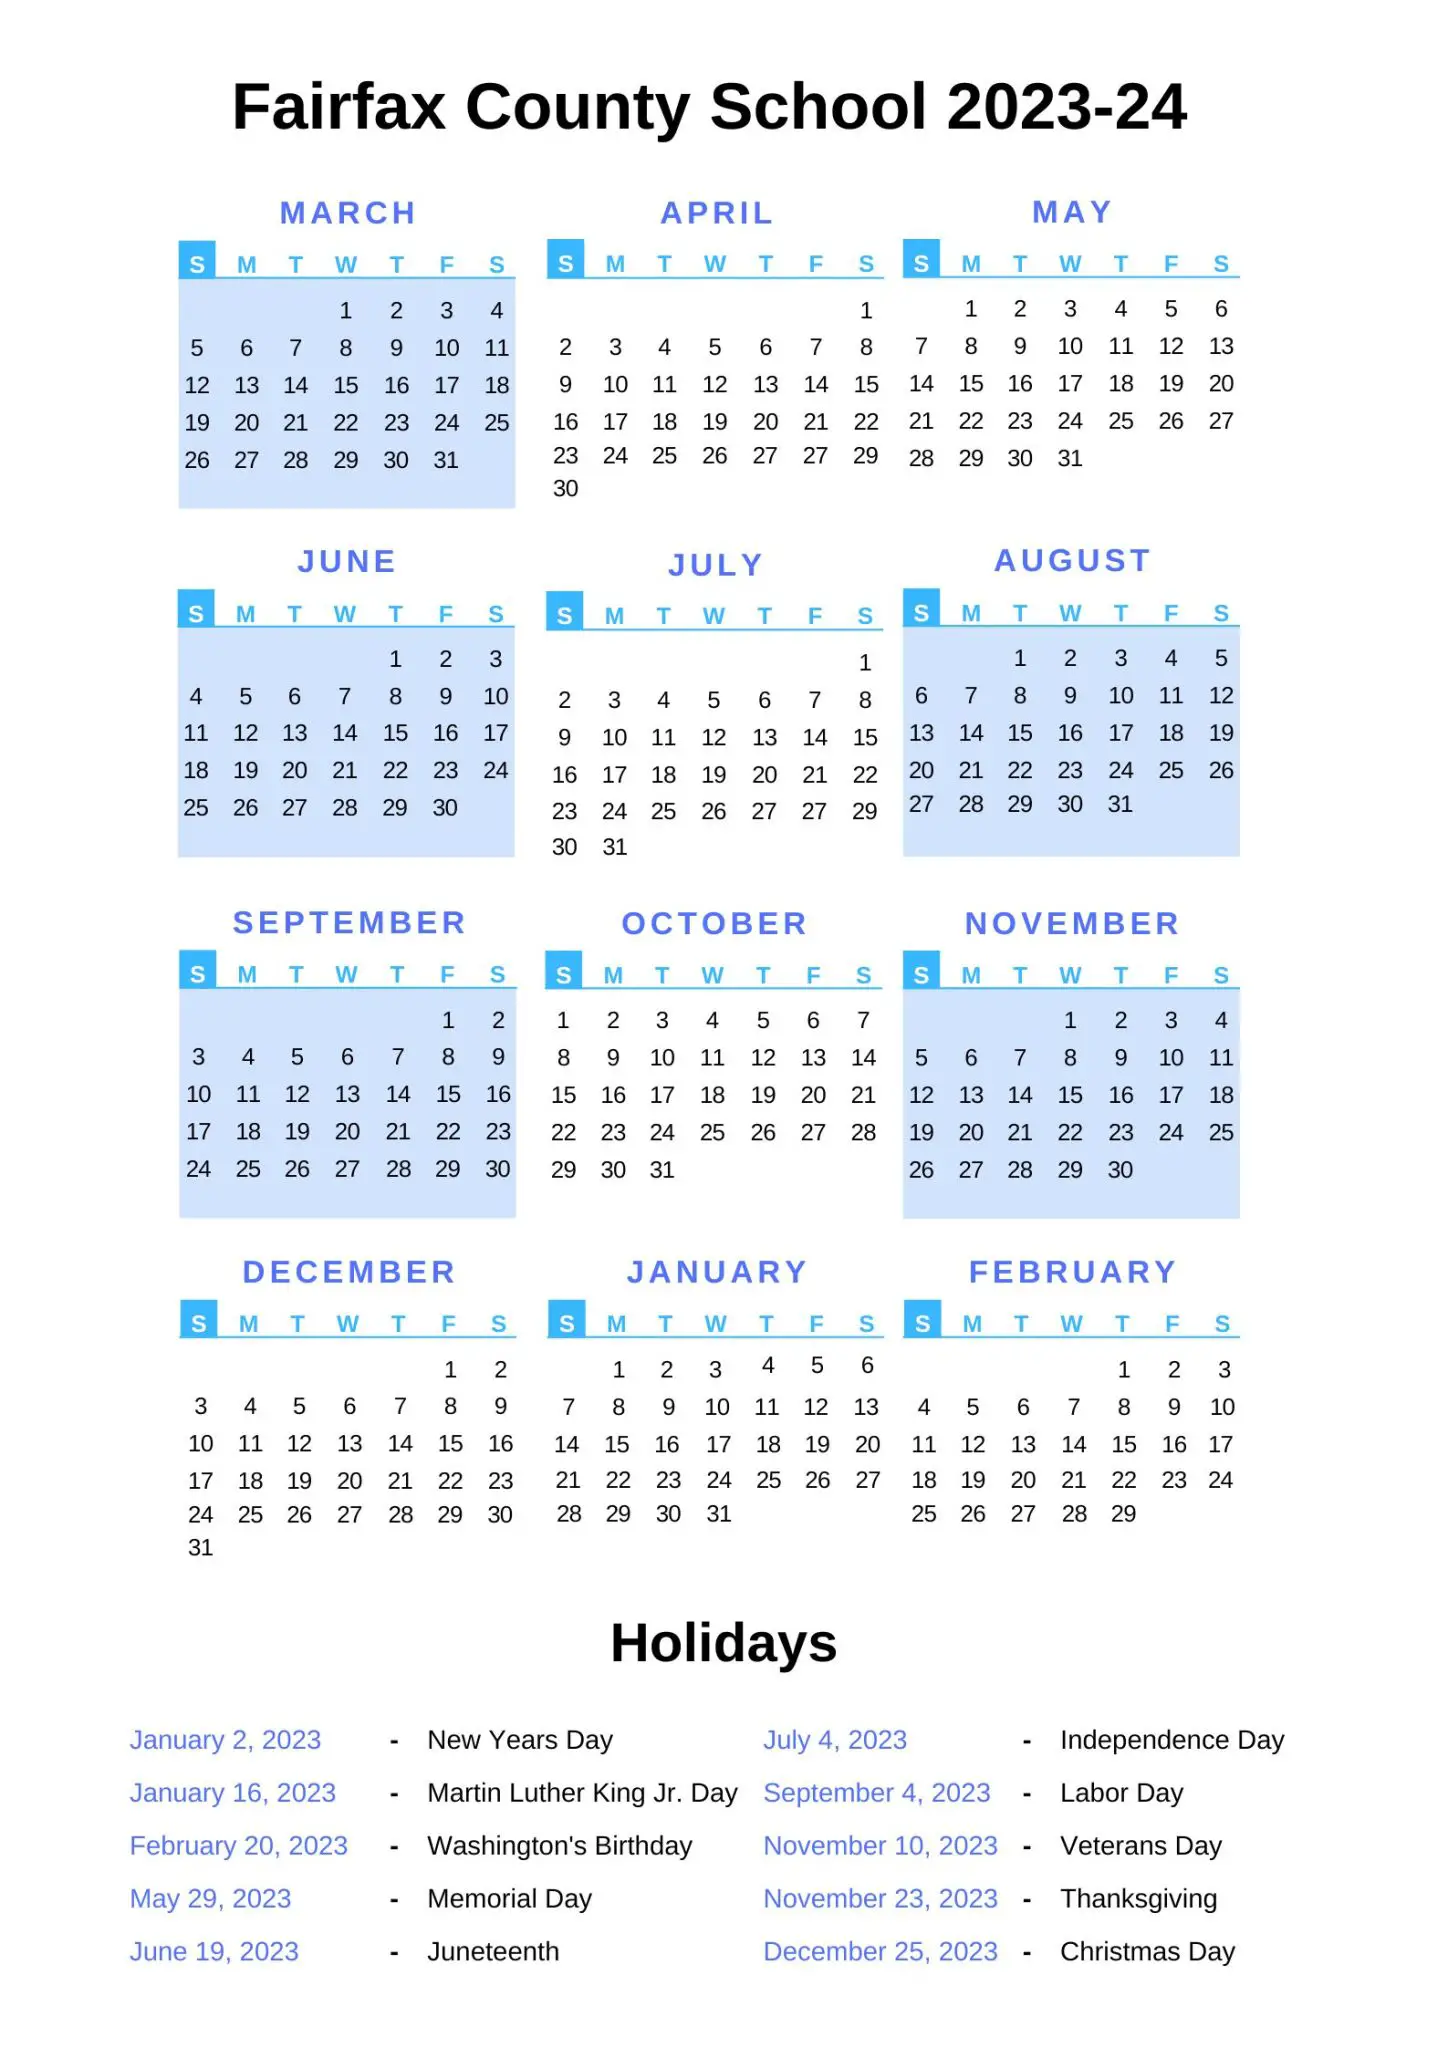 fairfax-county-school-calendar-with-holidays-2022-2023